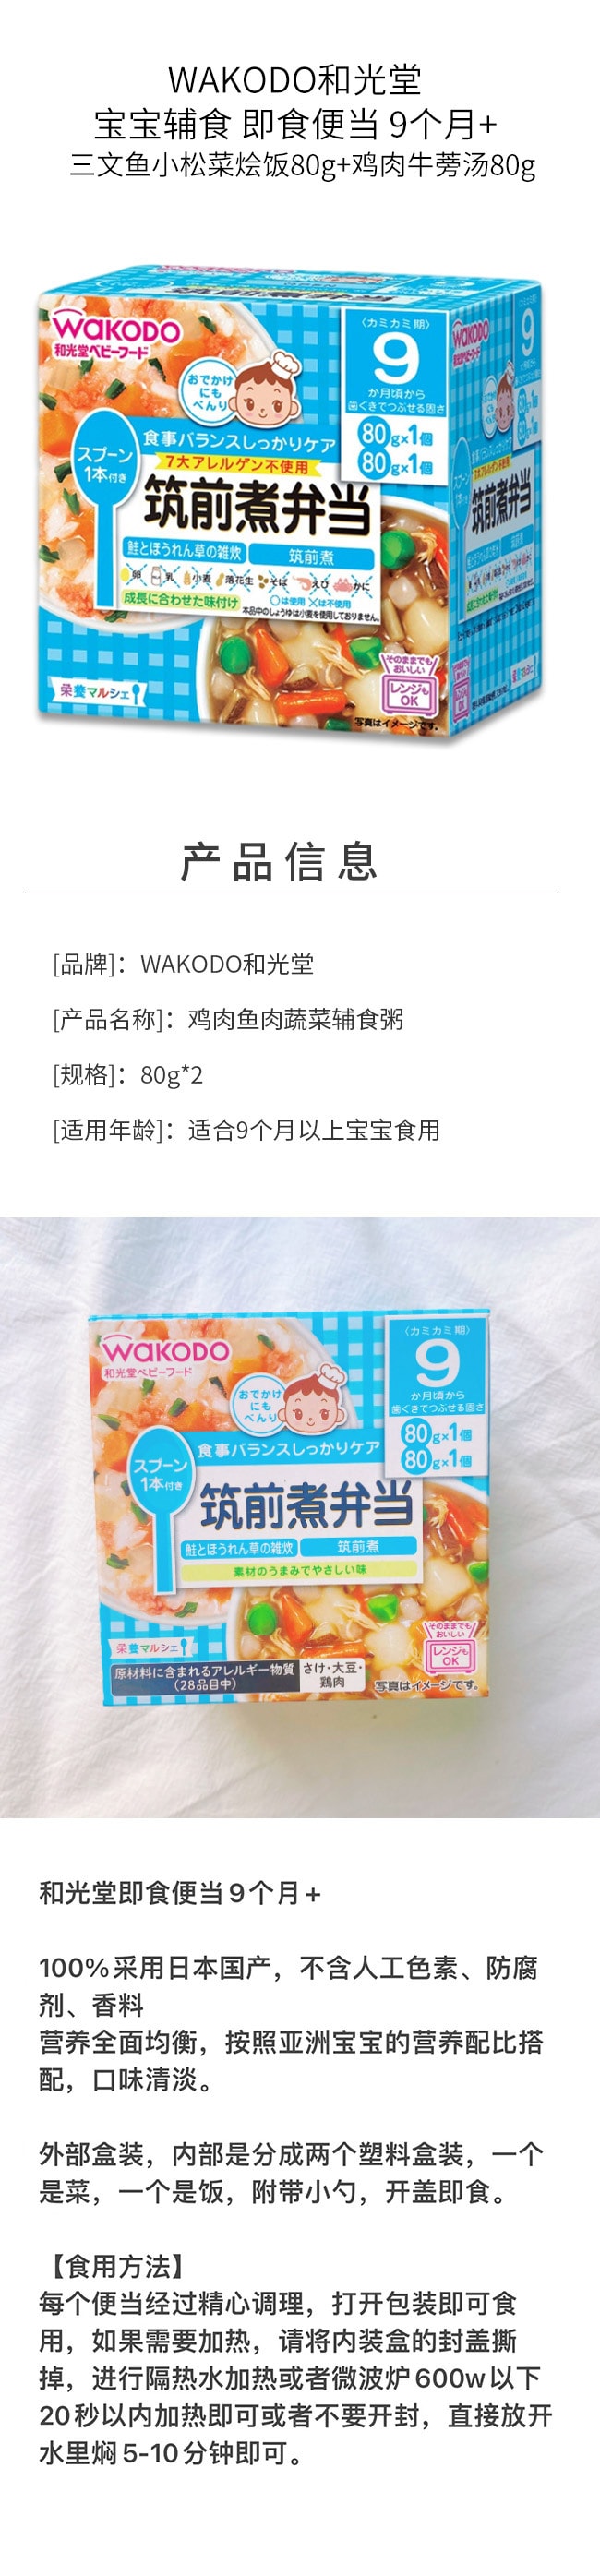 【日本直邮】WAKODO和光堂 宝宝辅食 即食便当 9个月+ 三文鱼小松菜烩饭80g+鸡肉牛蒡汤80g